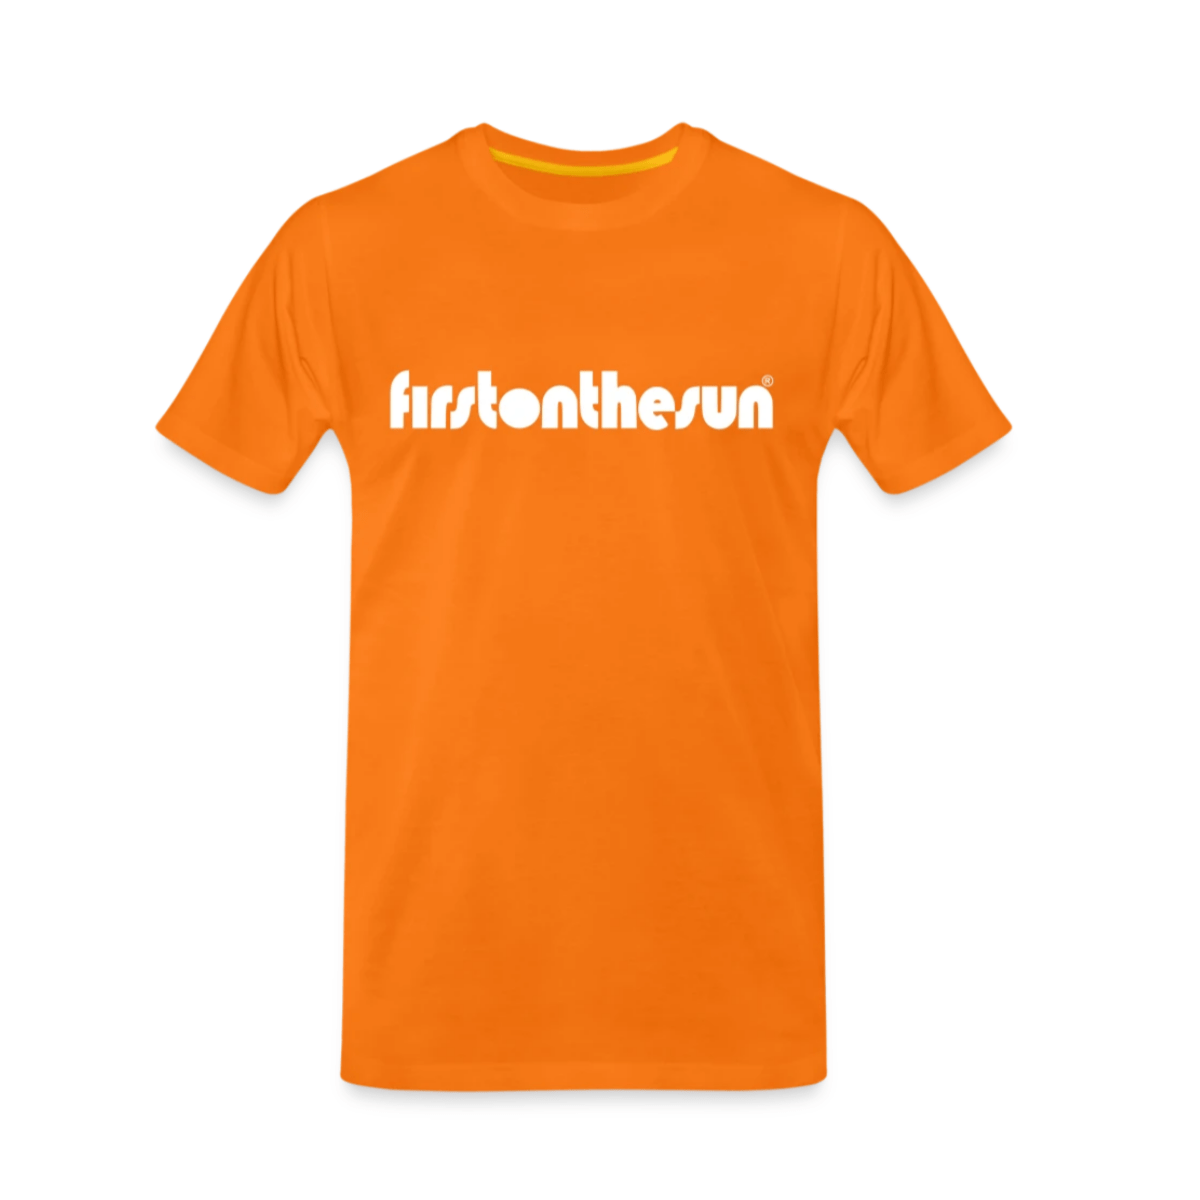 Spirituelles T-Shirt von First on the Sun in orange mit weißem Schriftzug